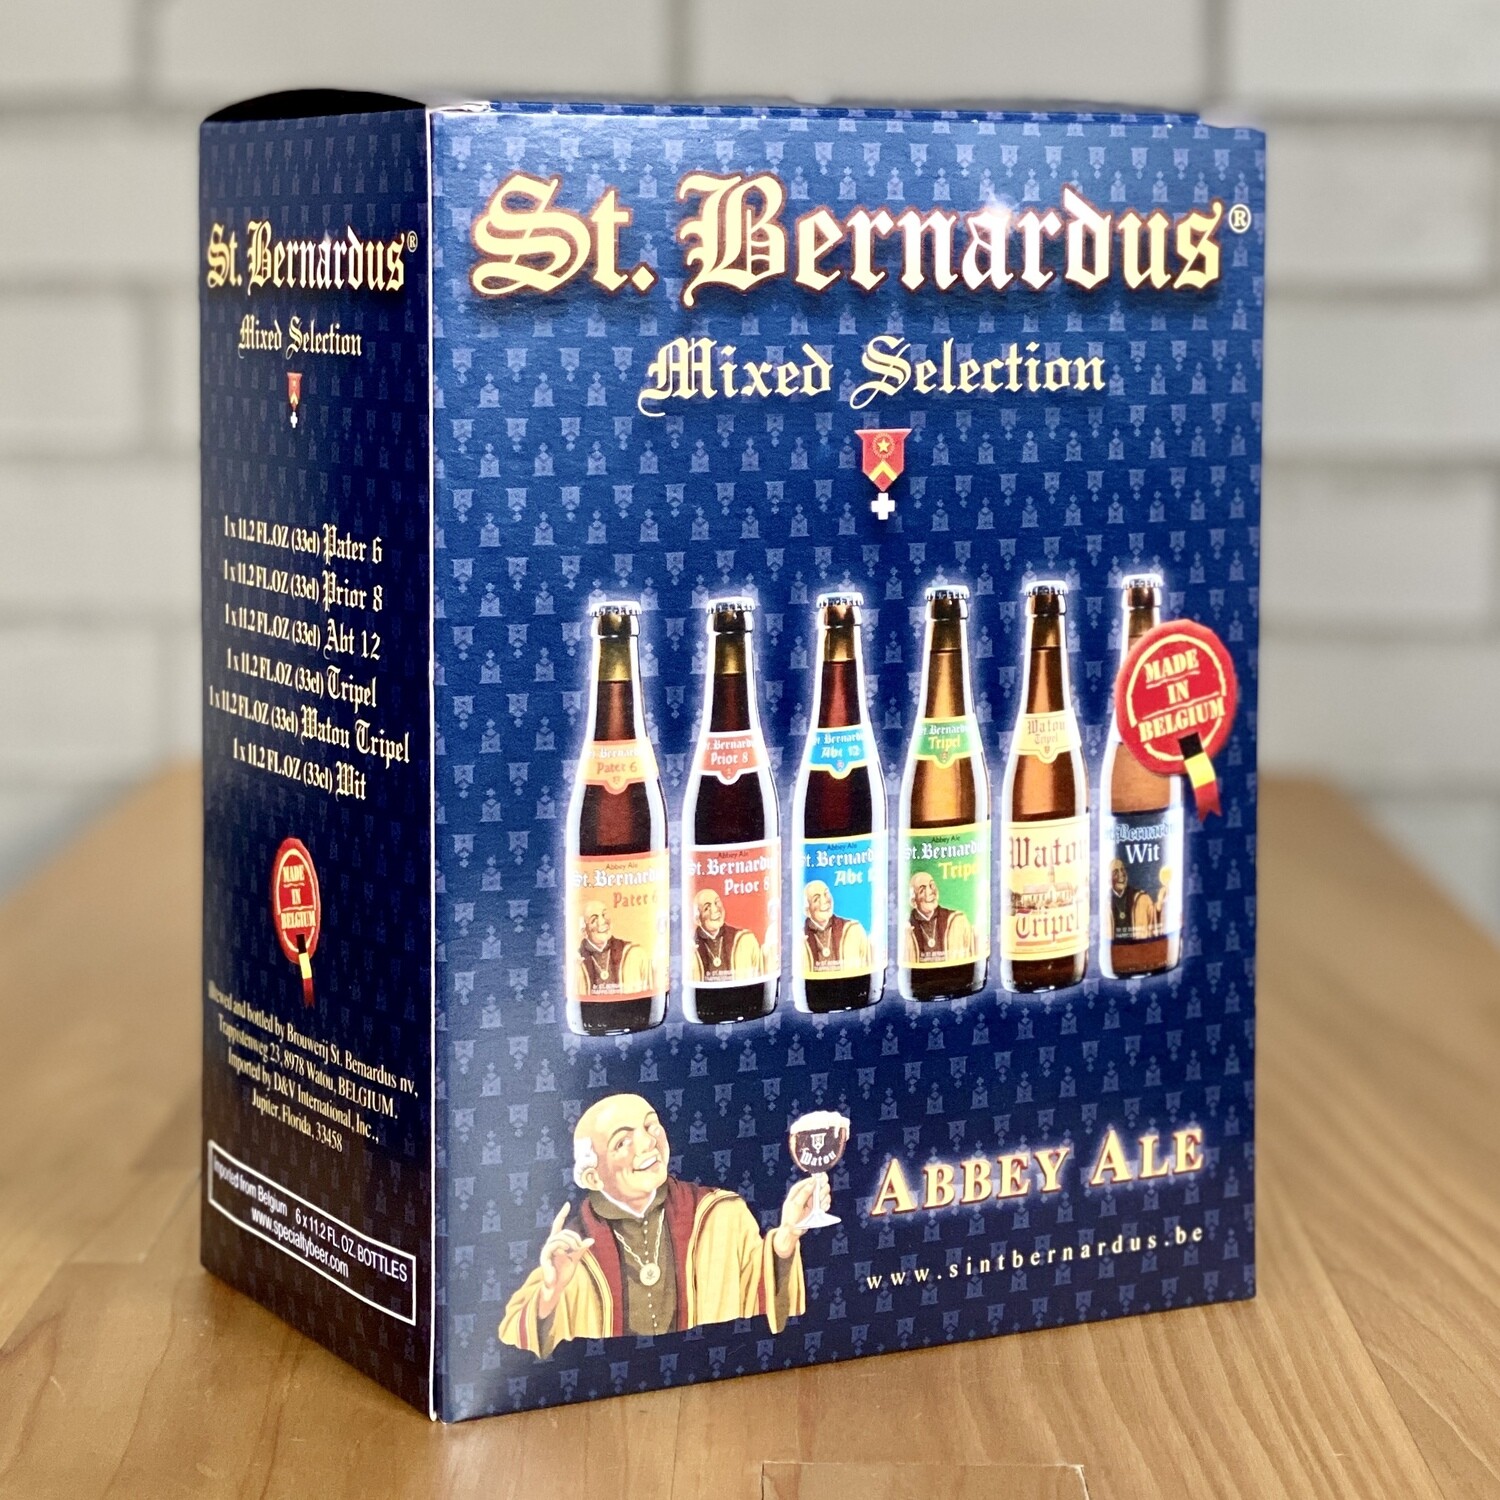 St. Bernardus Mixed Selection (6pk)